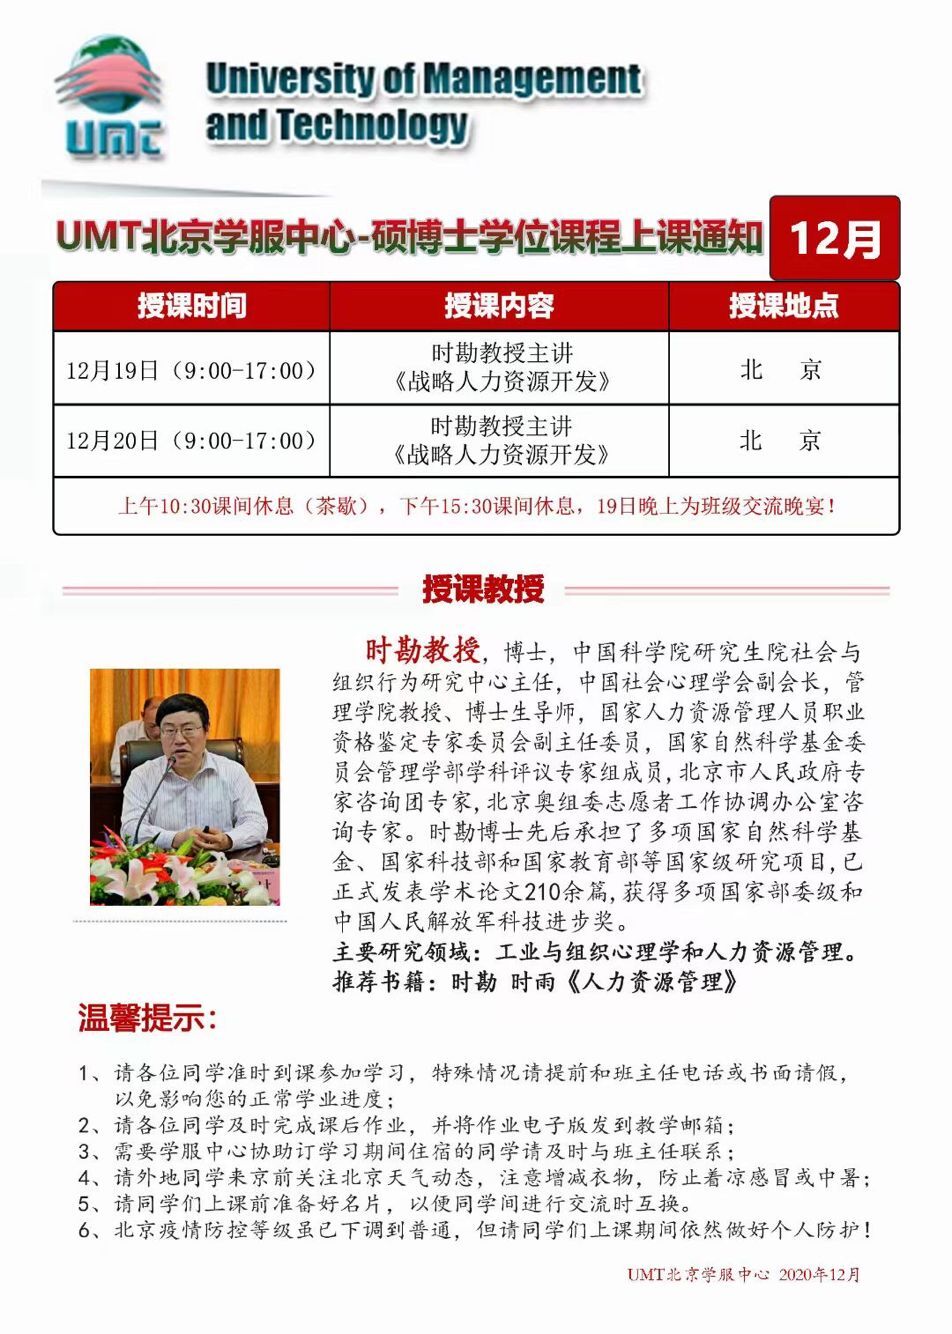 UMT免联考MBA硕士学位班课程2020年12月开课通知